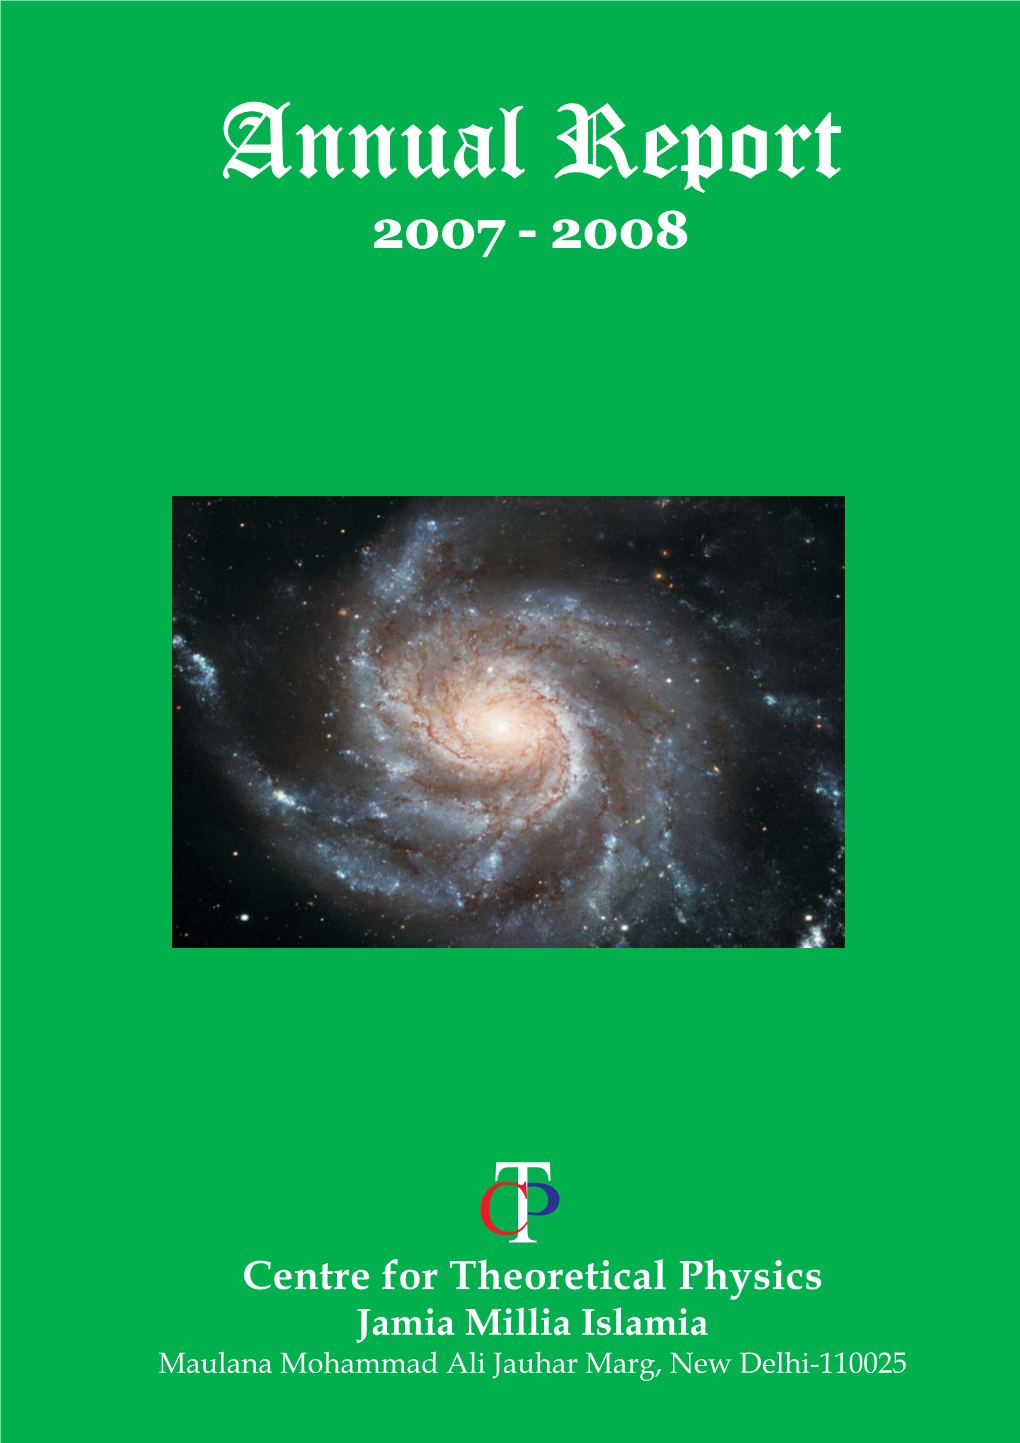 Annual Report April 2007 - March 2008